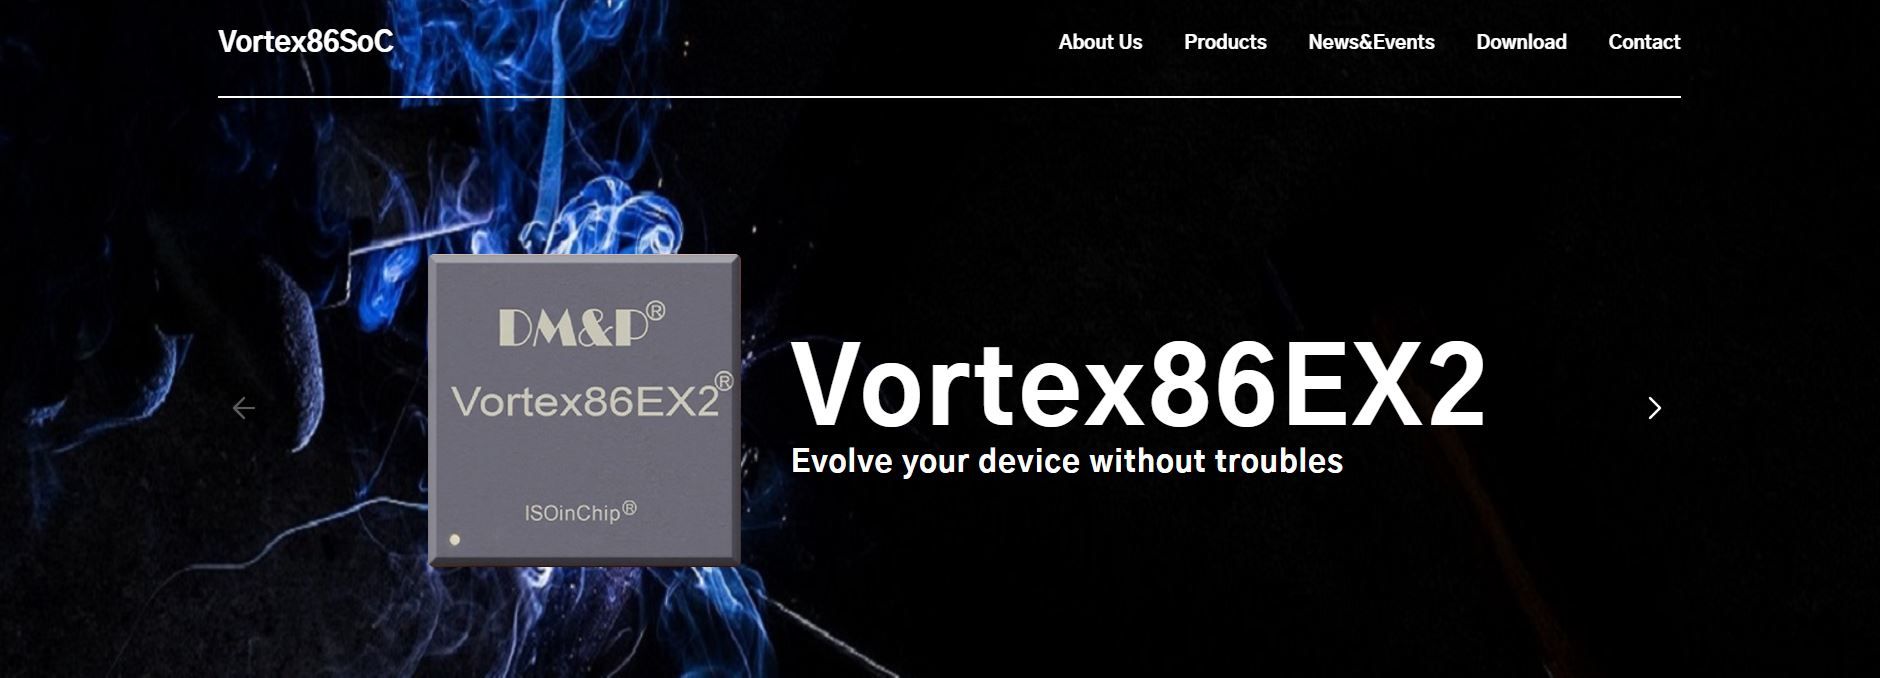 Vortex86 homepage